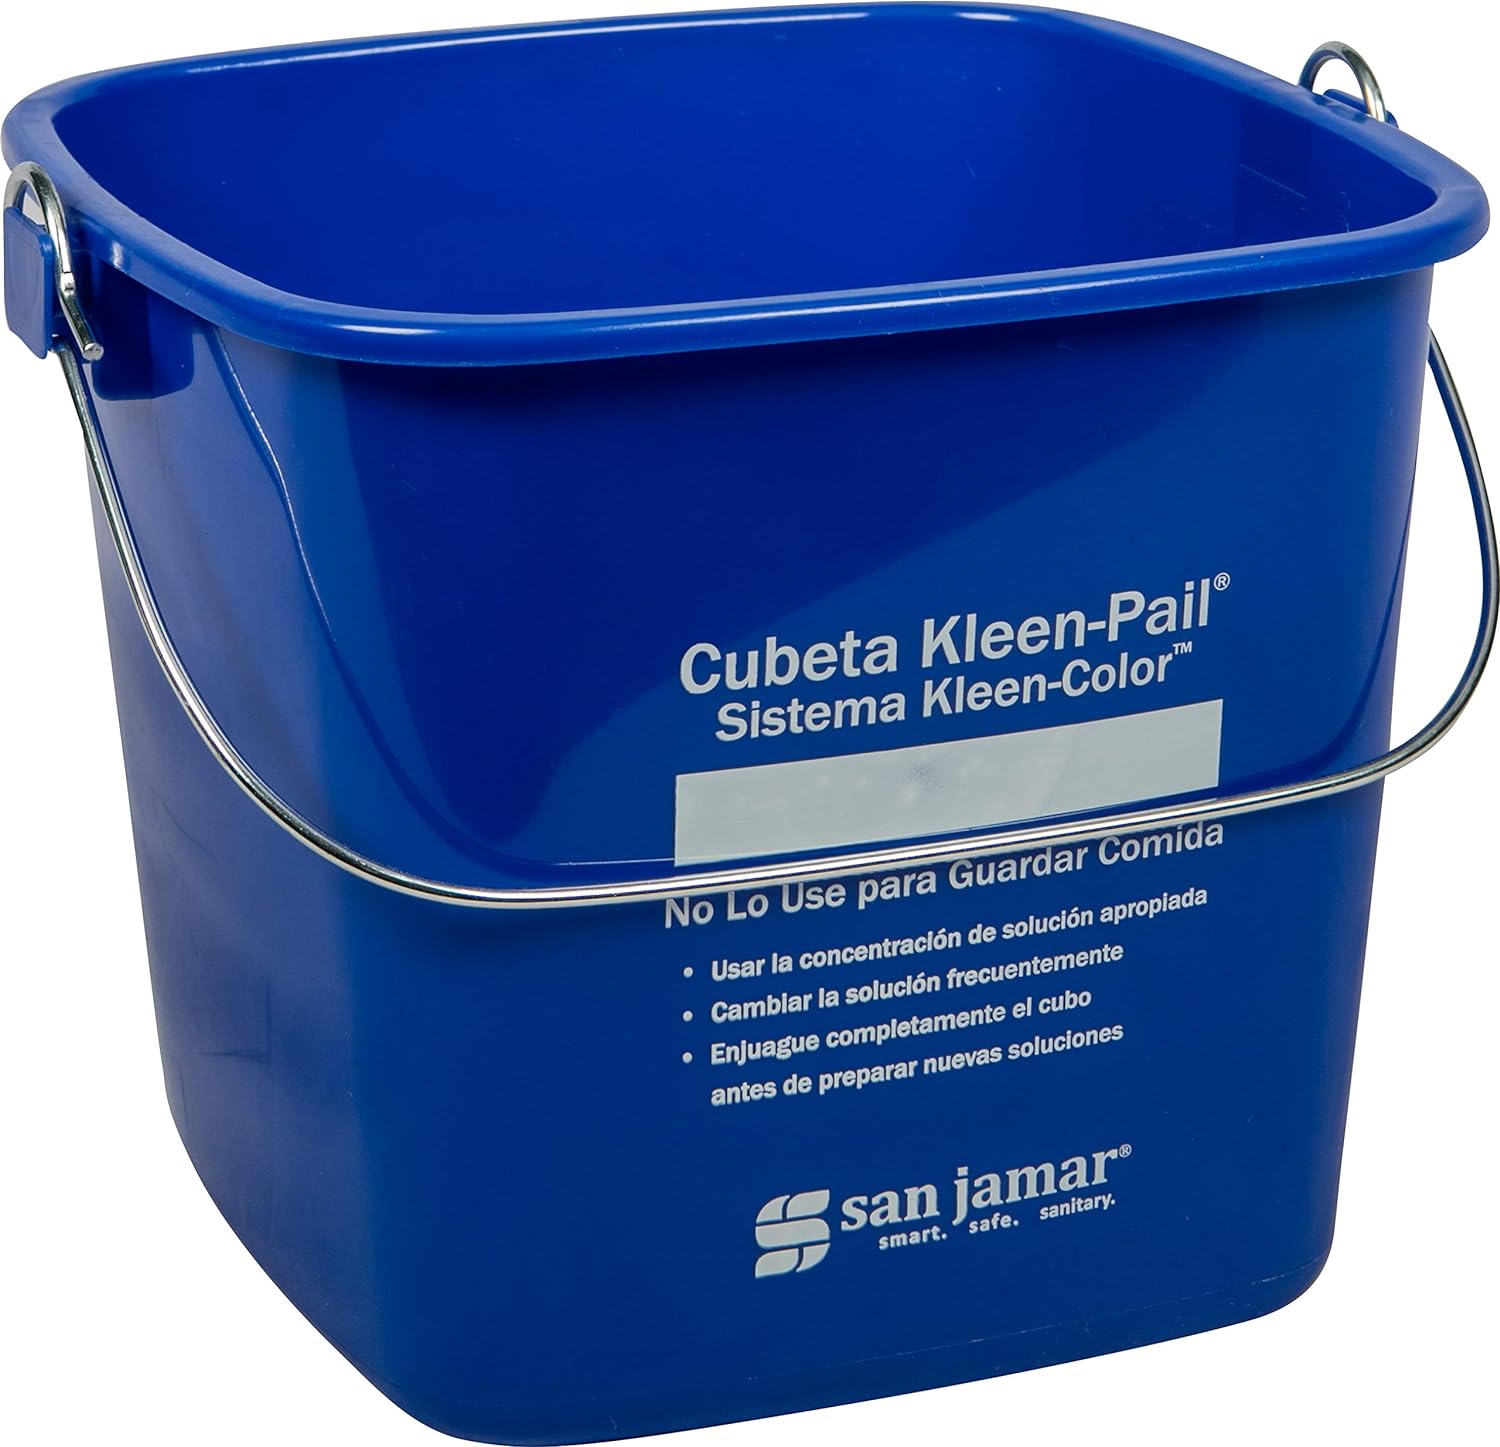 Kleen-Pail Cubeta de limpieza comercial., Azul